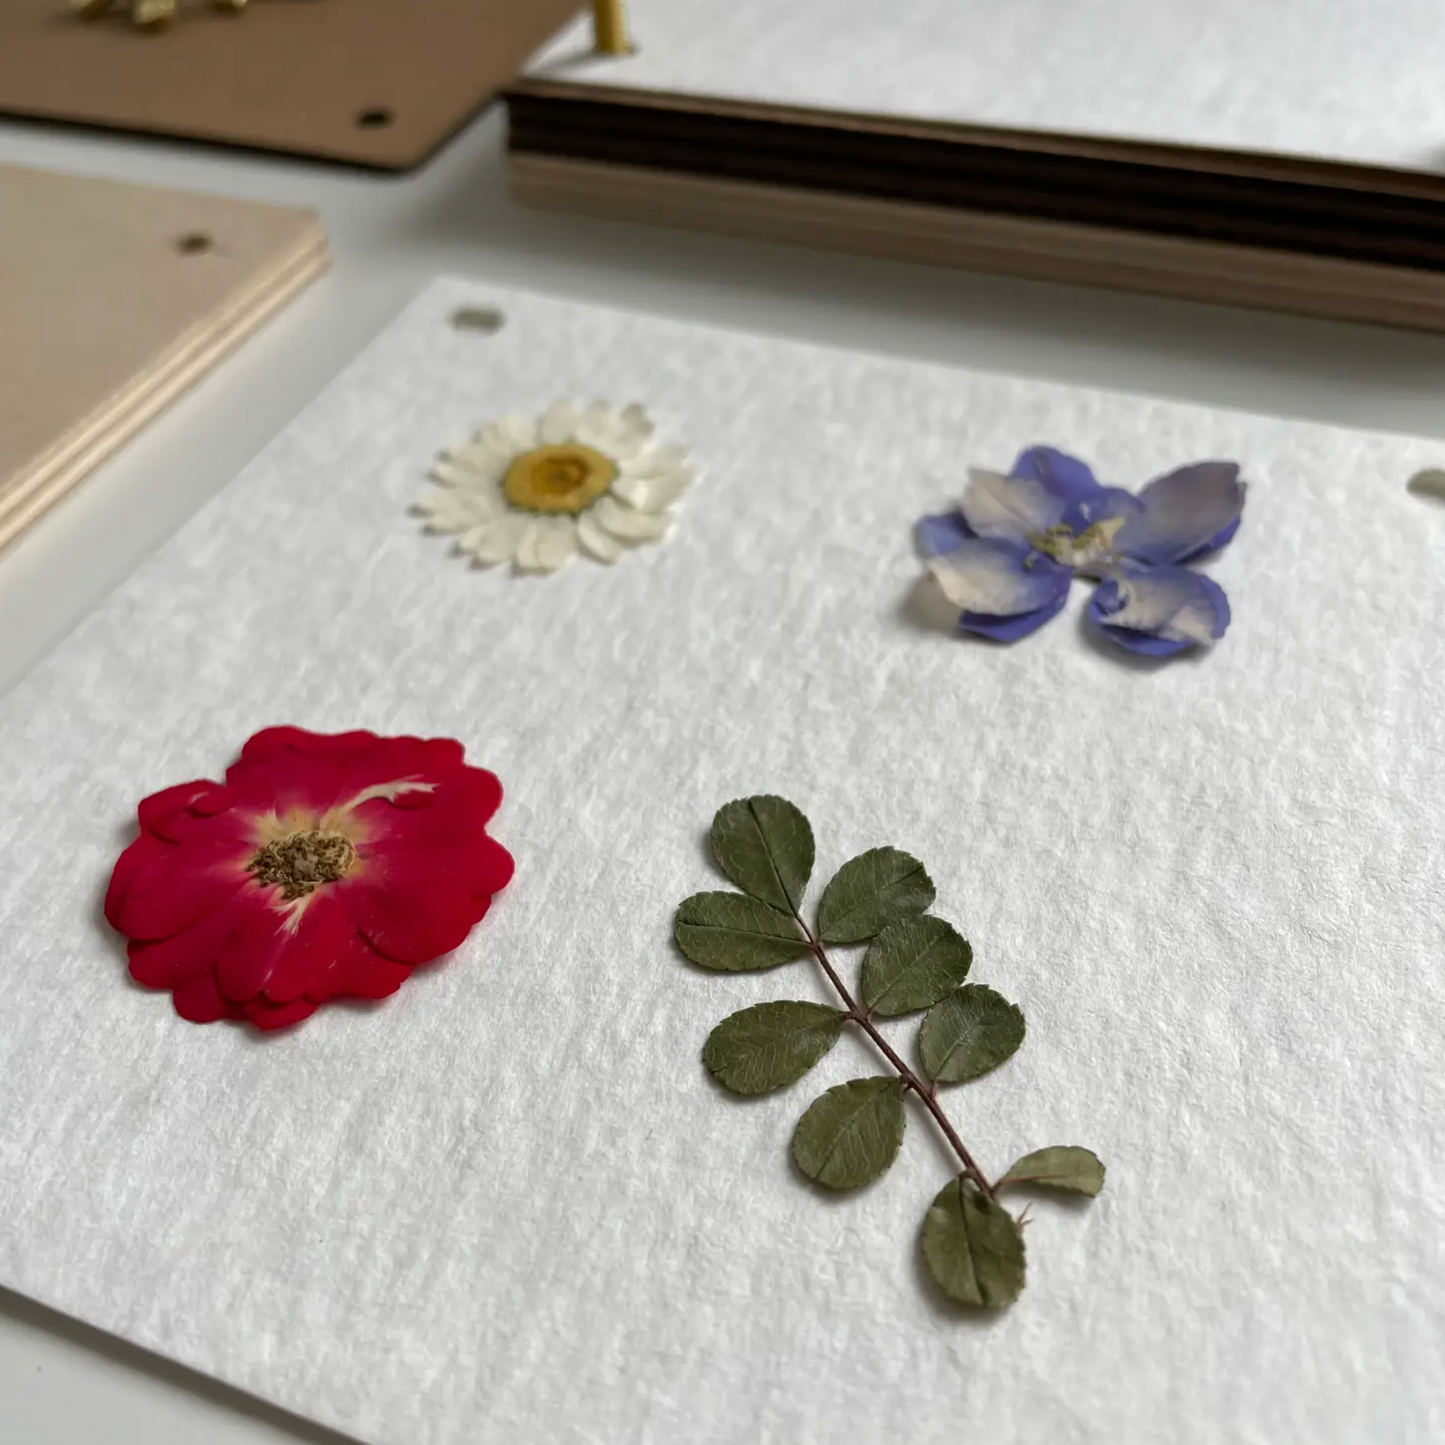 Flower Press Kit by Sunnie Lane